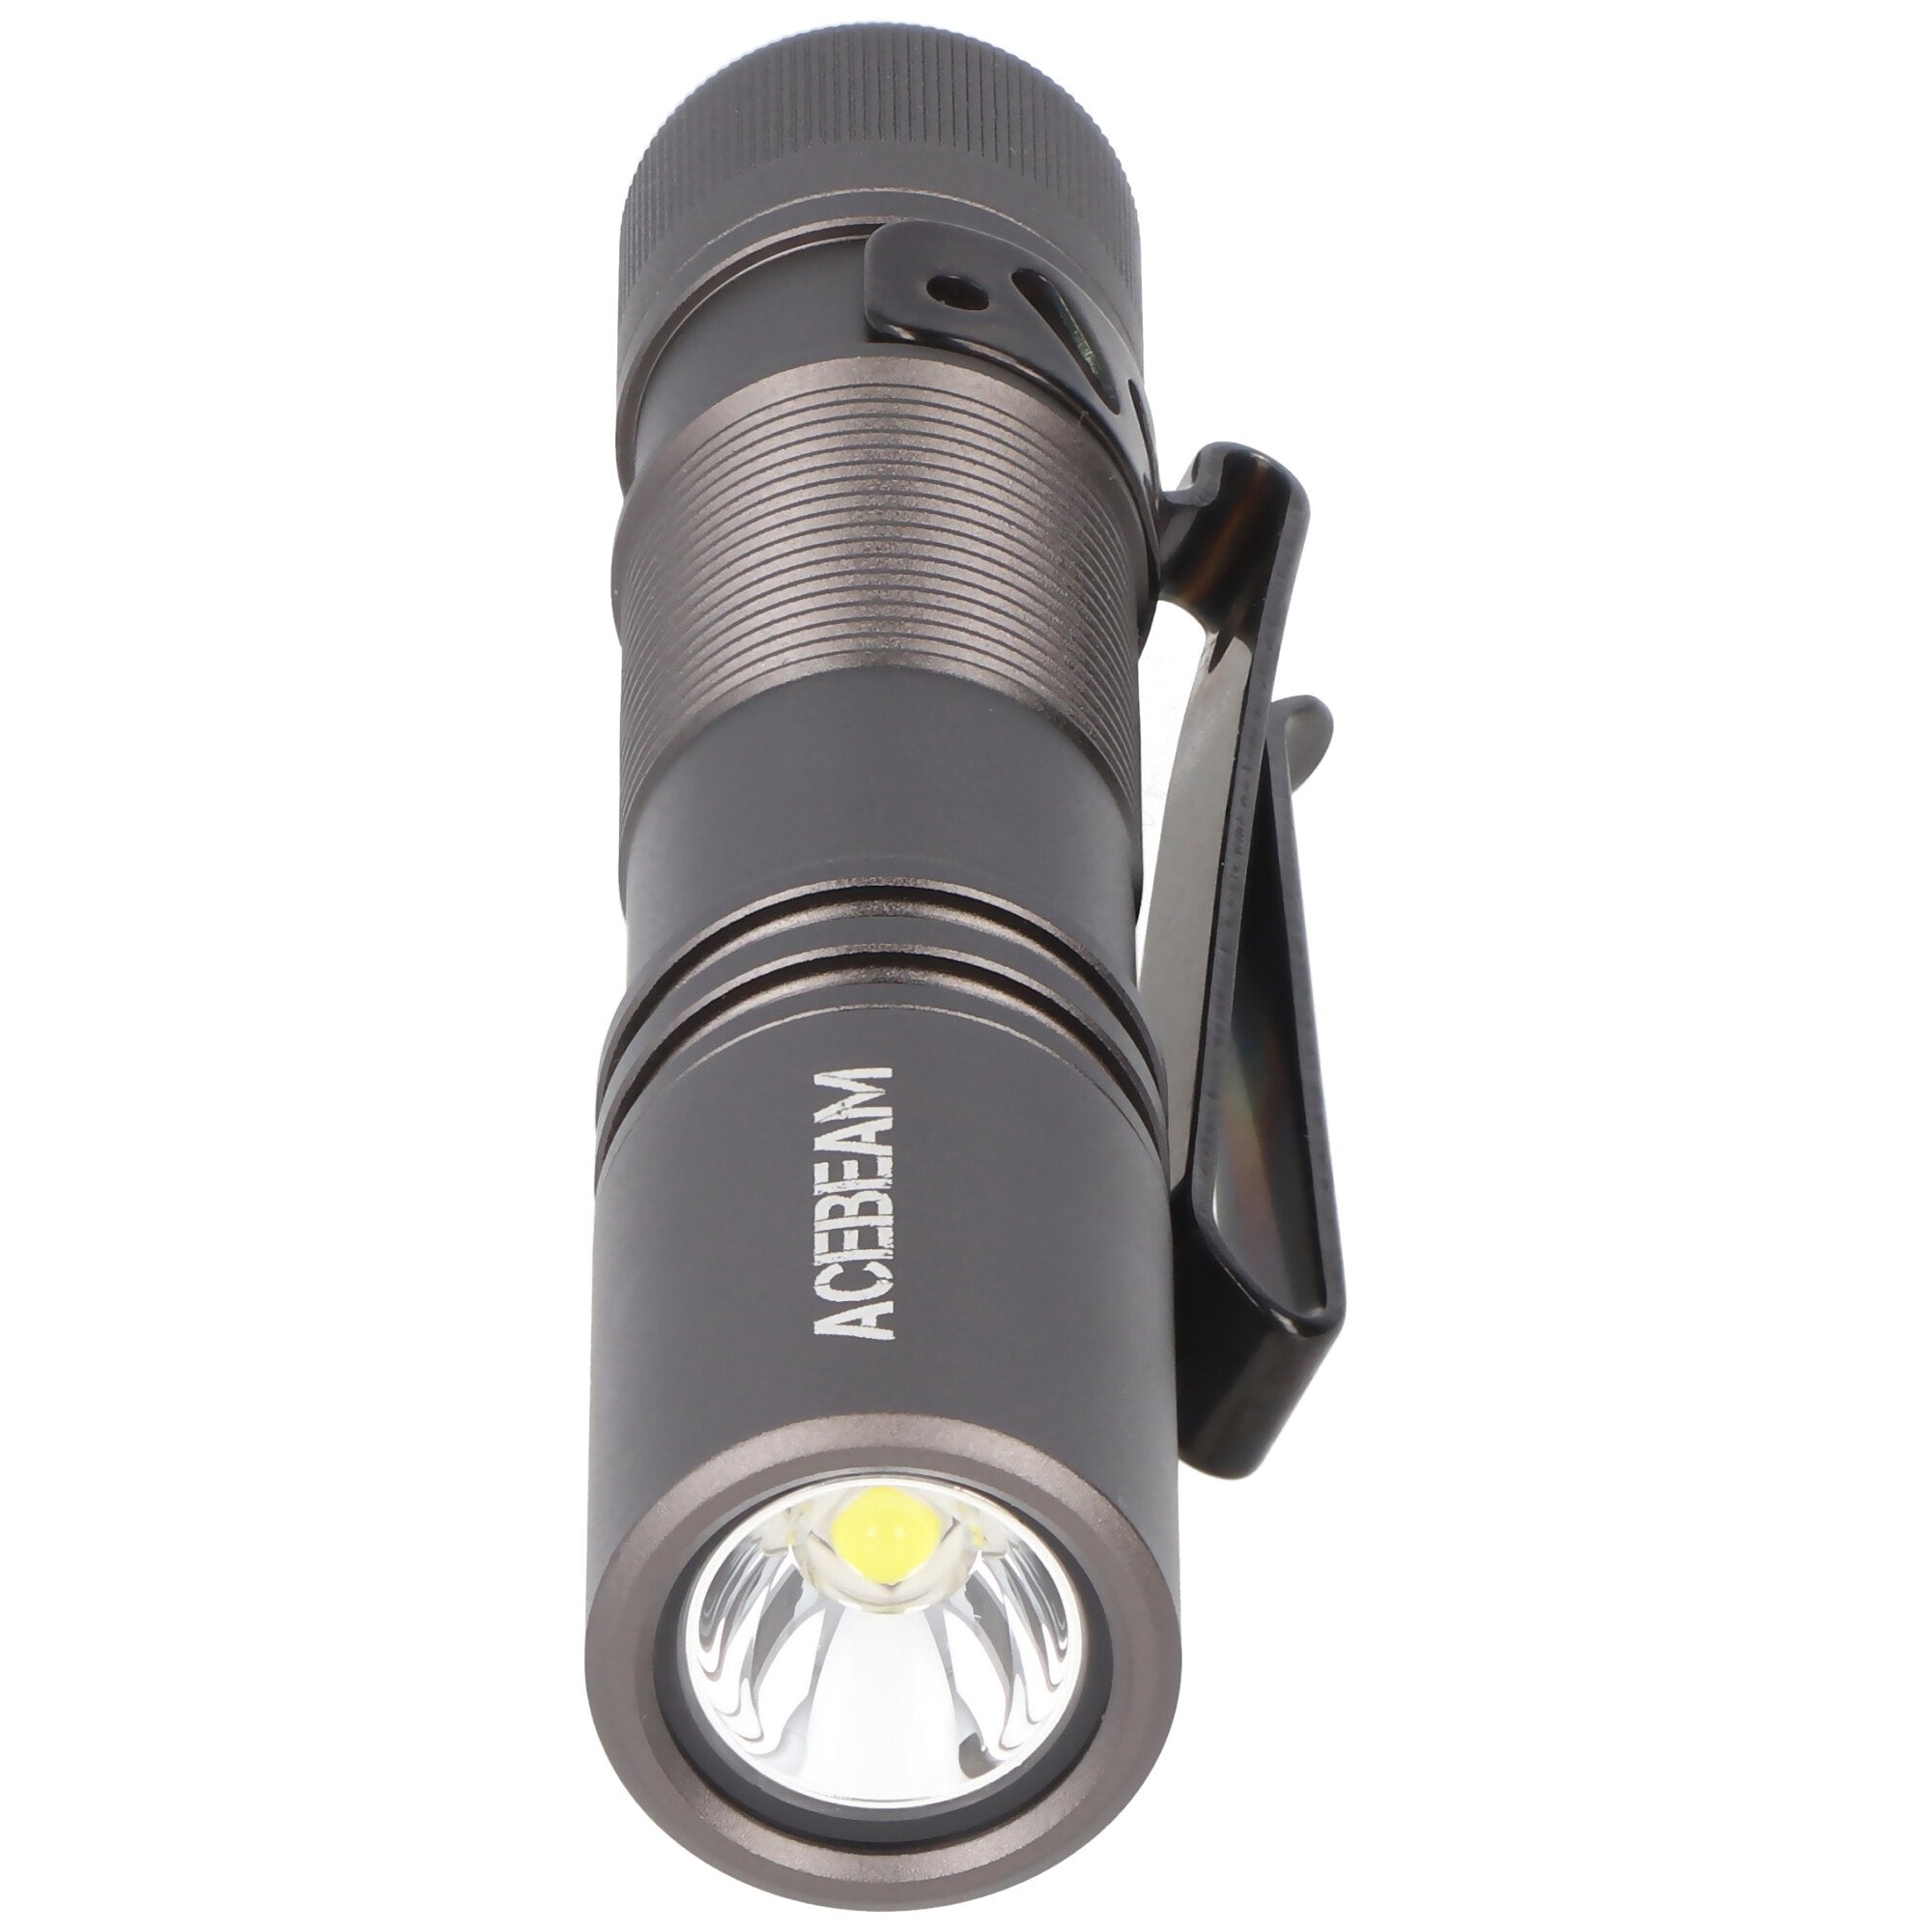 AceBeam Pokelit AA LED zaklamp met maximaal 1.000 lumen, kleur grijs, inclusief 14500 Li-Ion accu me